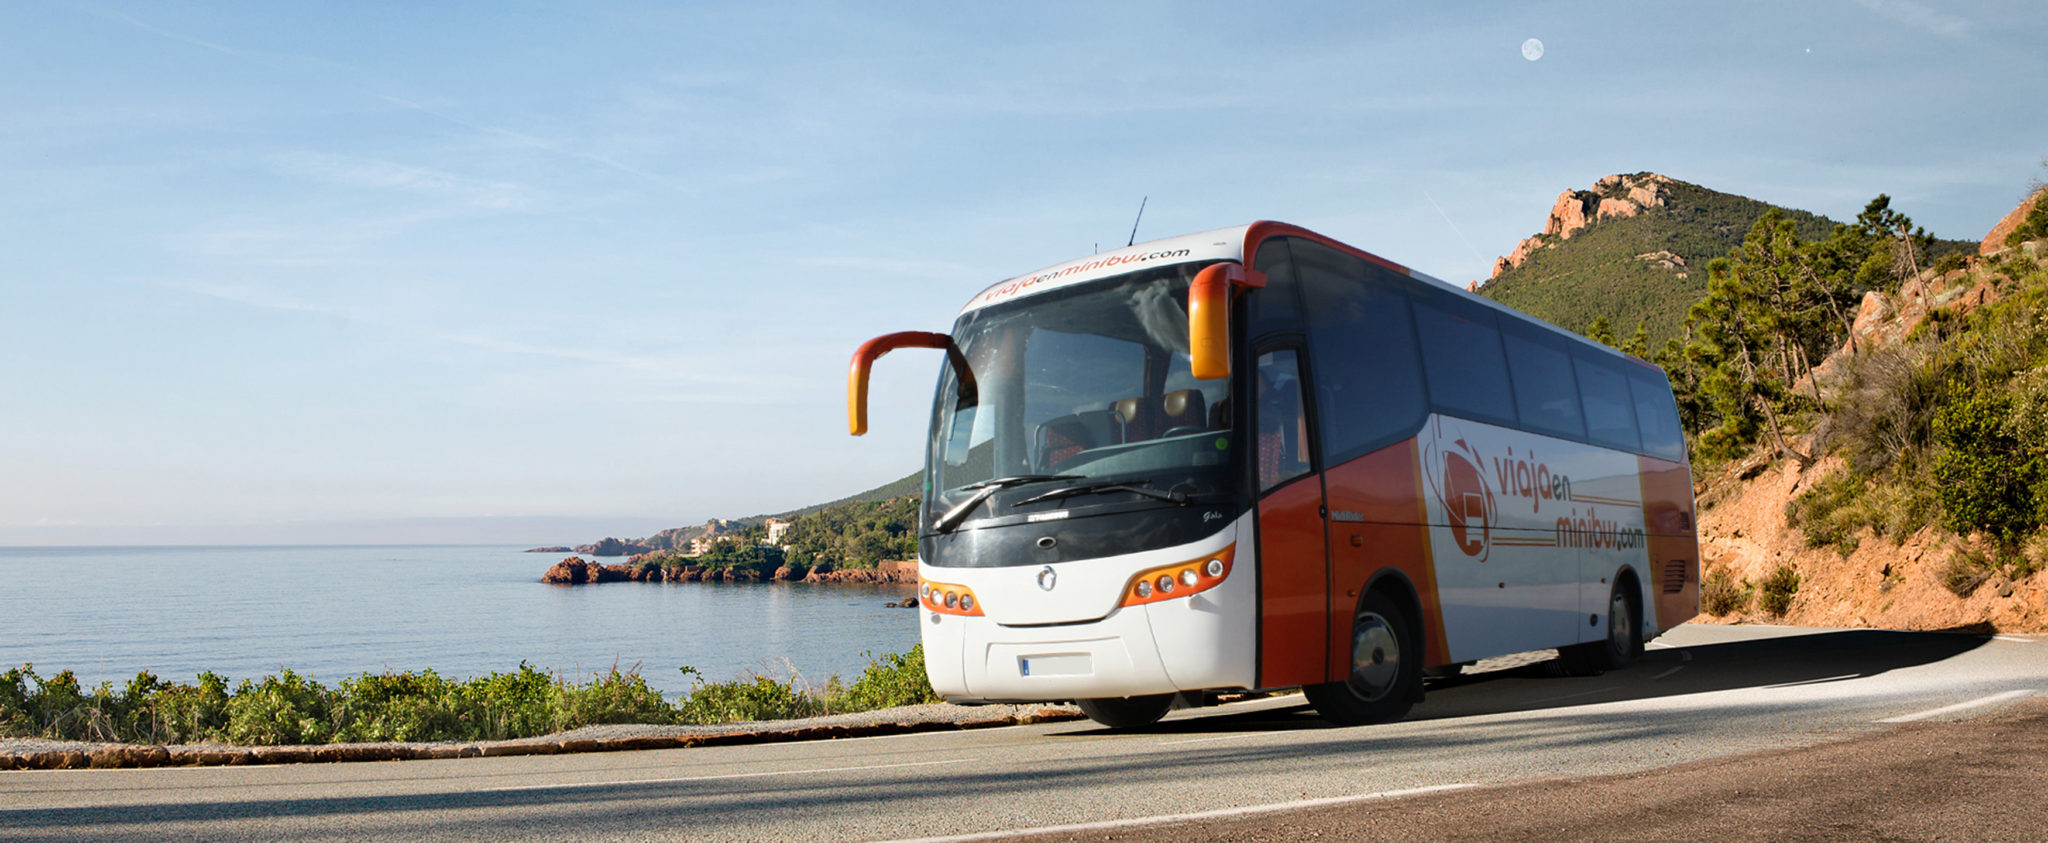 Minibús excursiones Andalucía